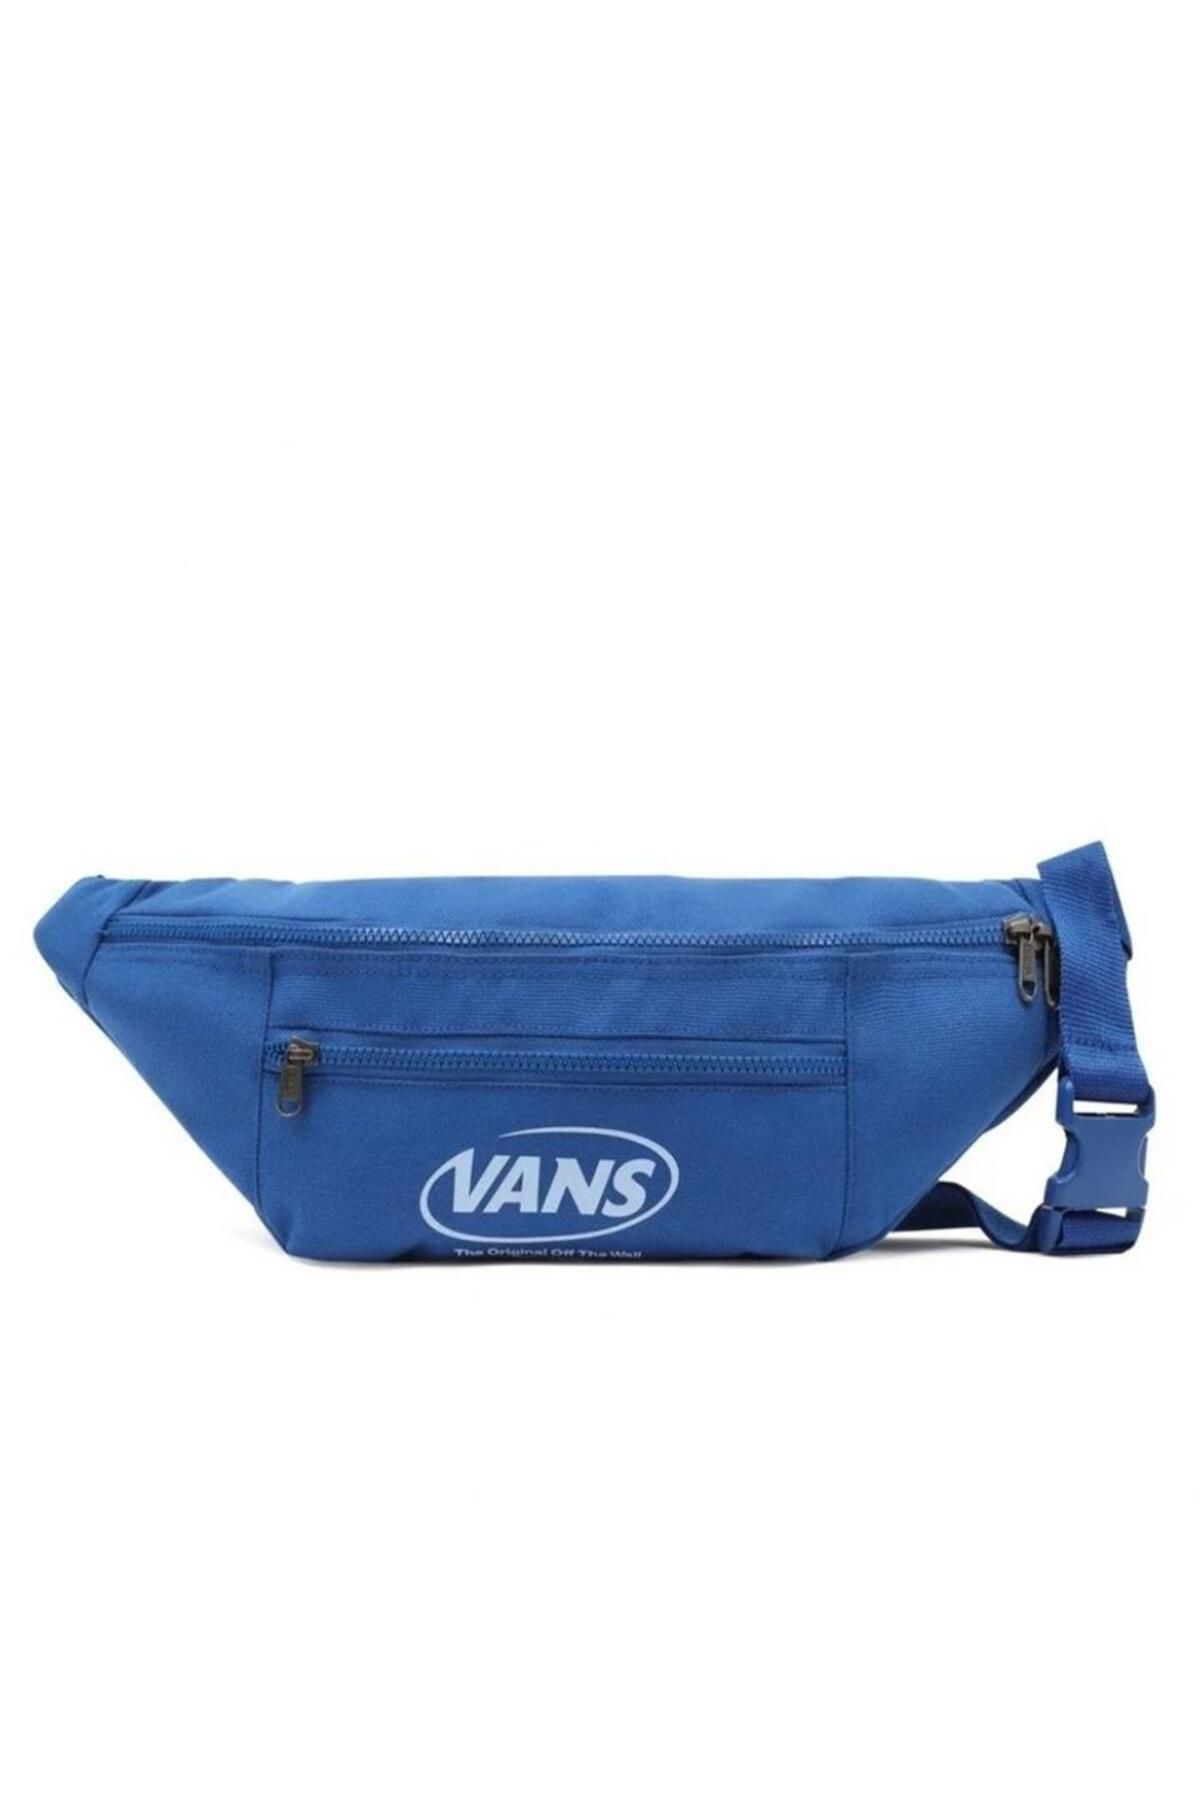 Vans Ward Cross Hı Grade Bodybag Bel Çantası Mavi